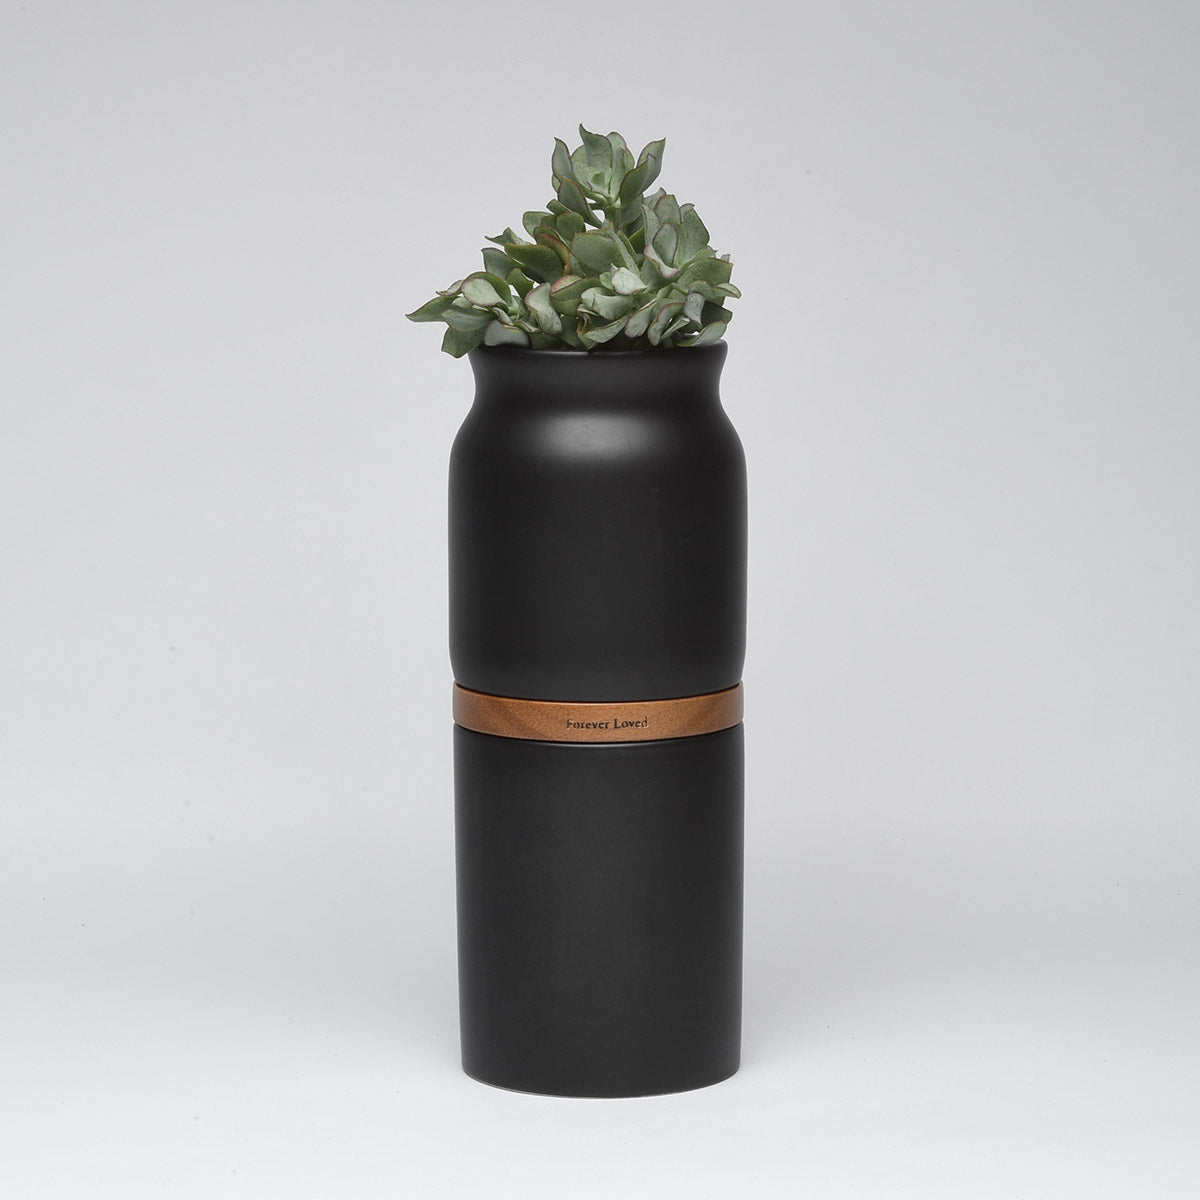 Vega Vase Urn in Black With Dark Wood